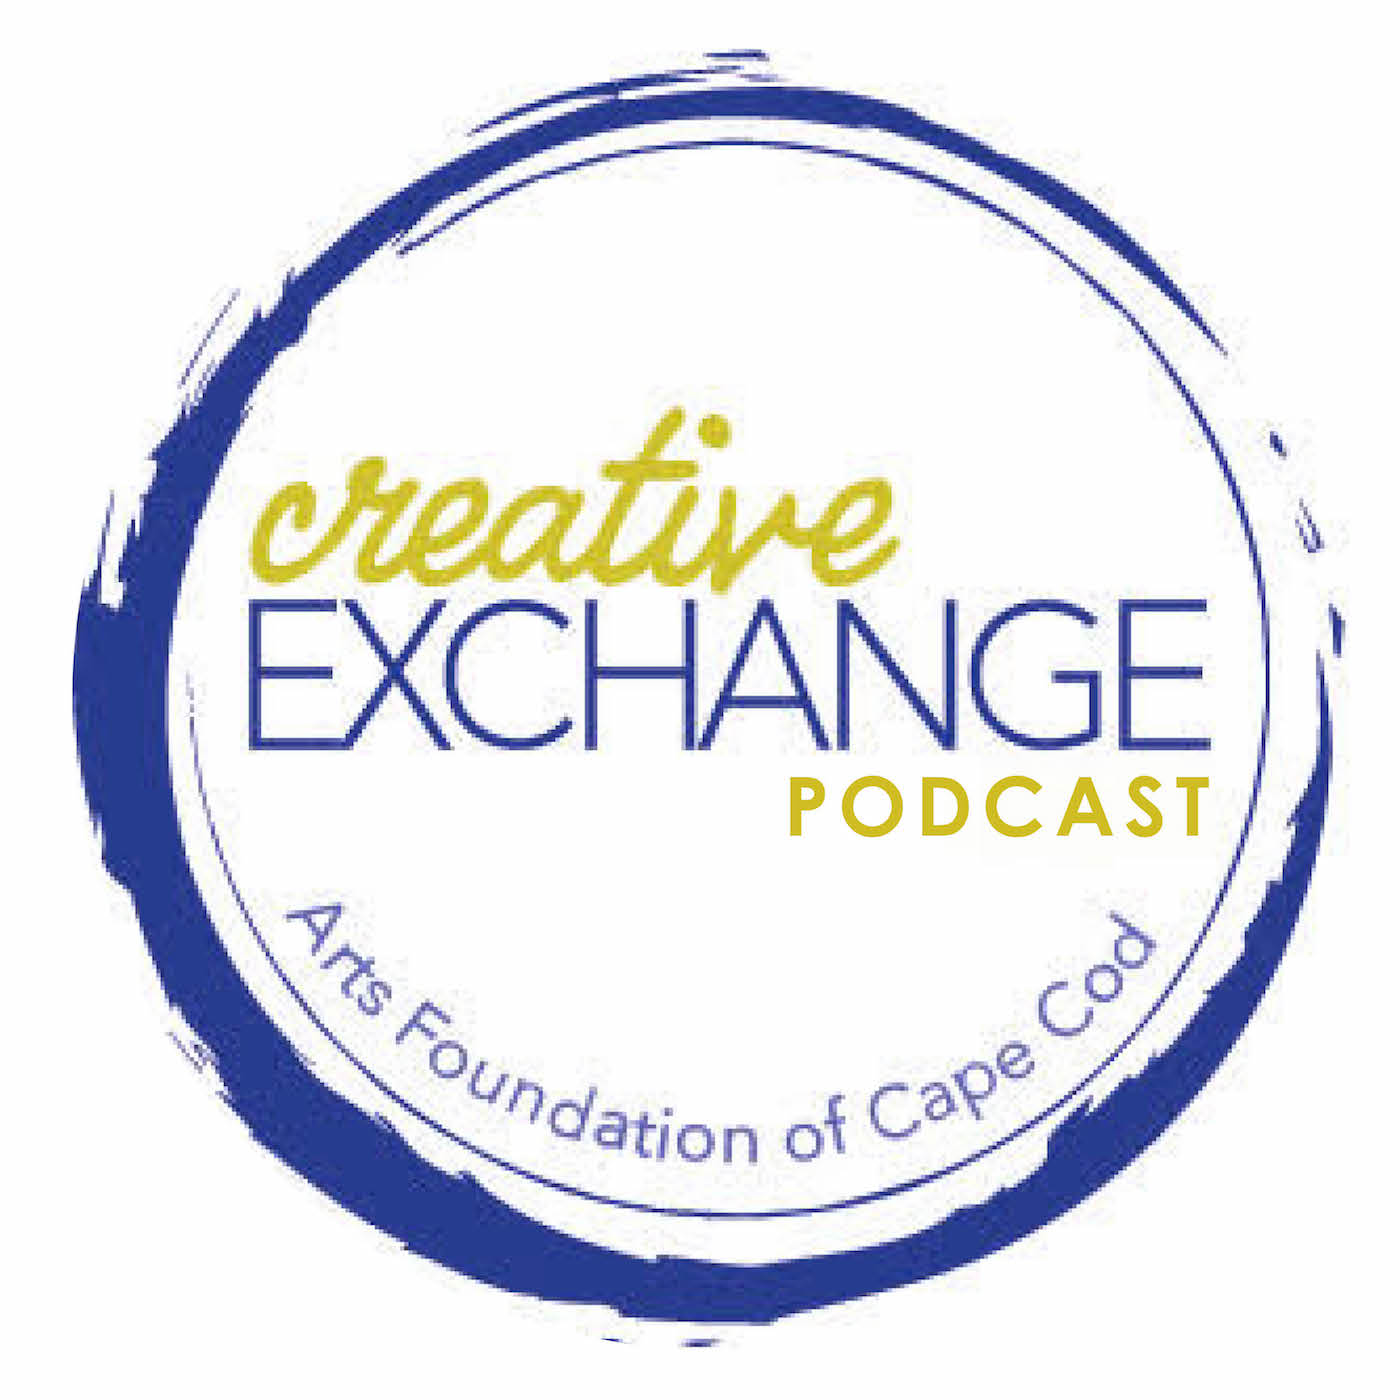 The Creative Exchange Podcast